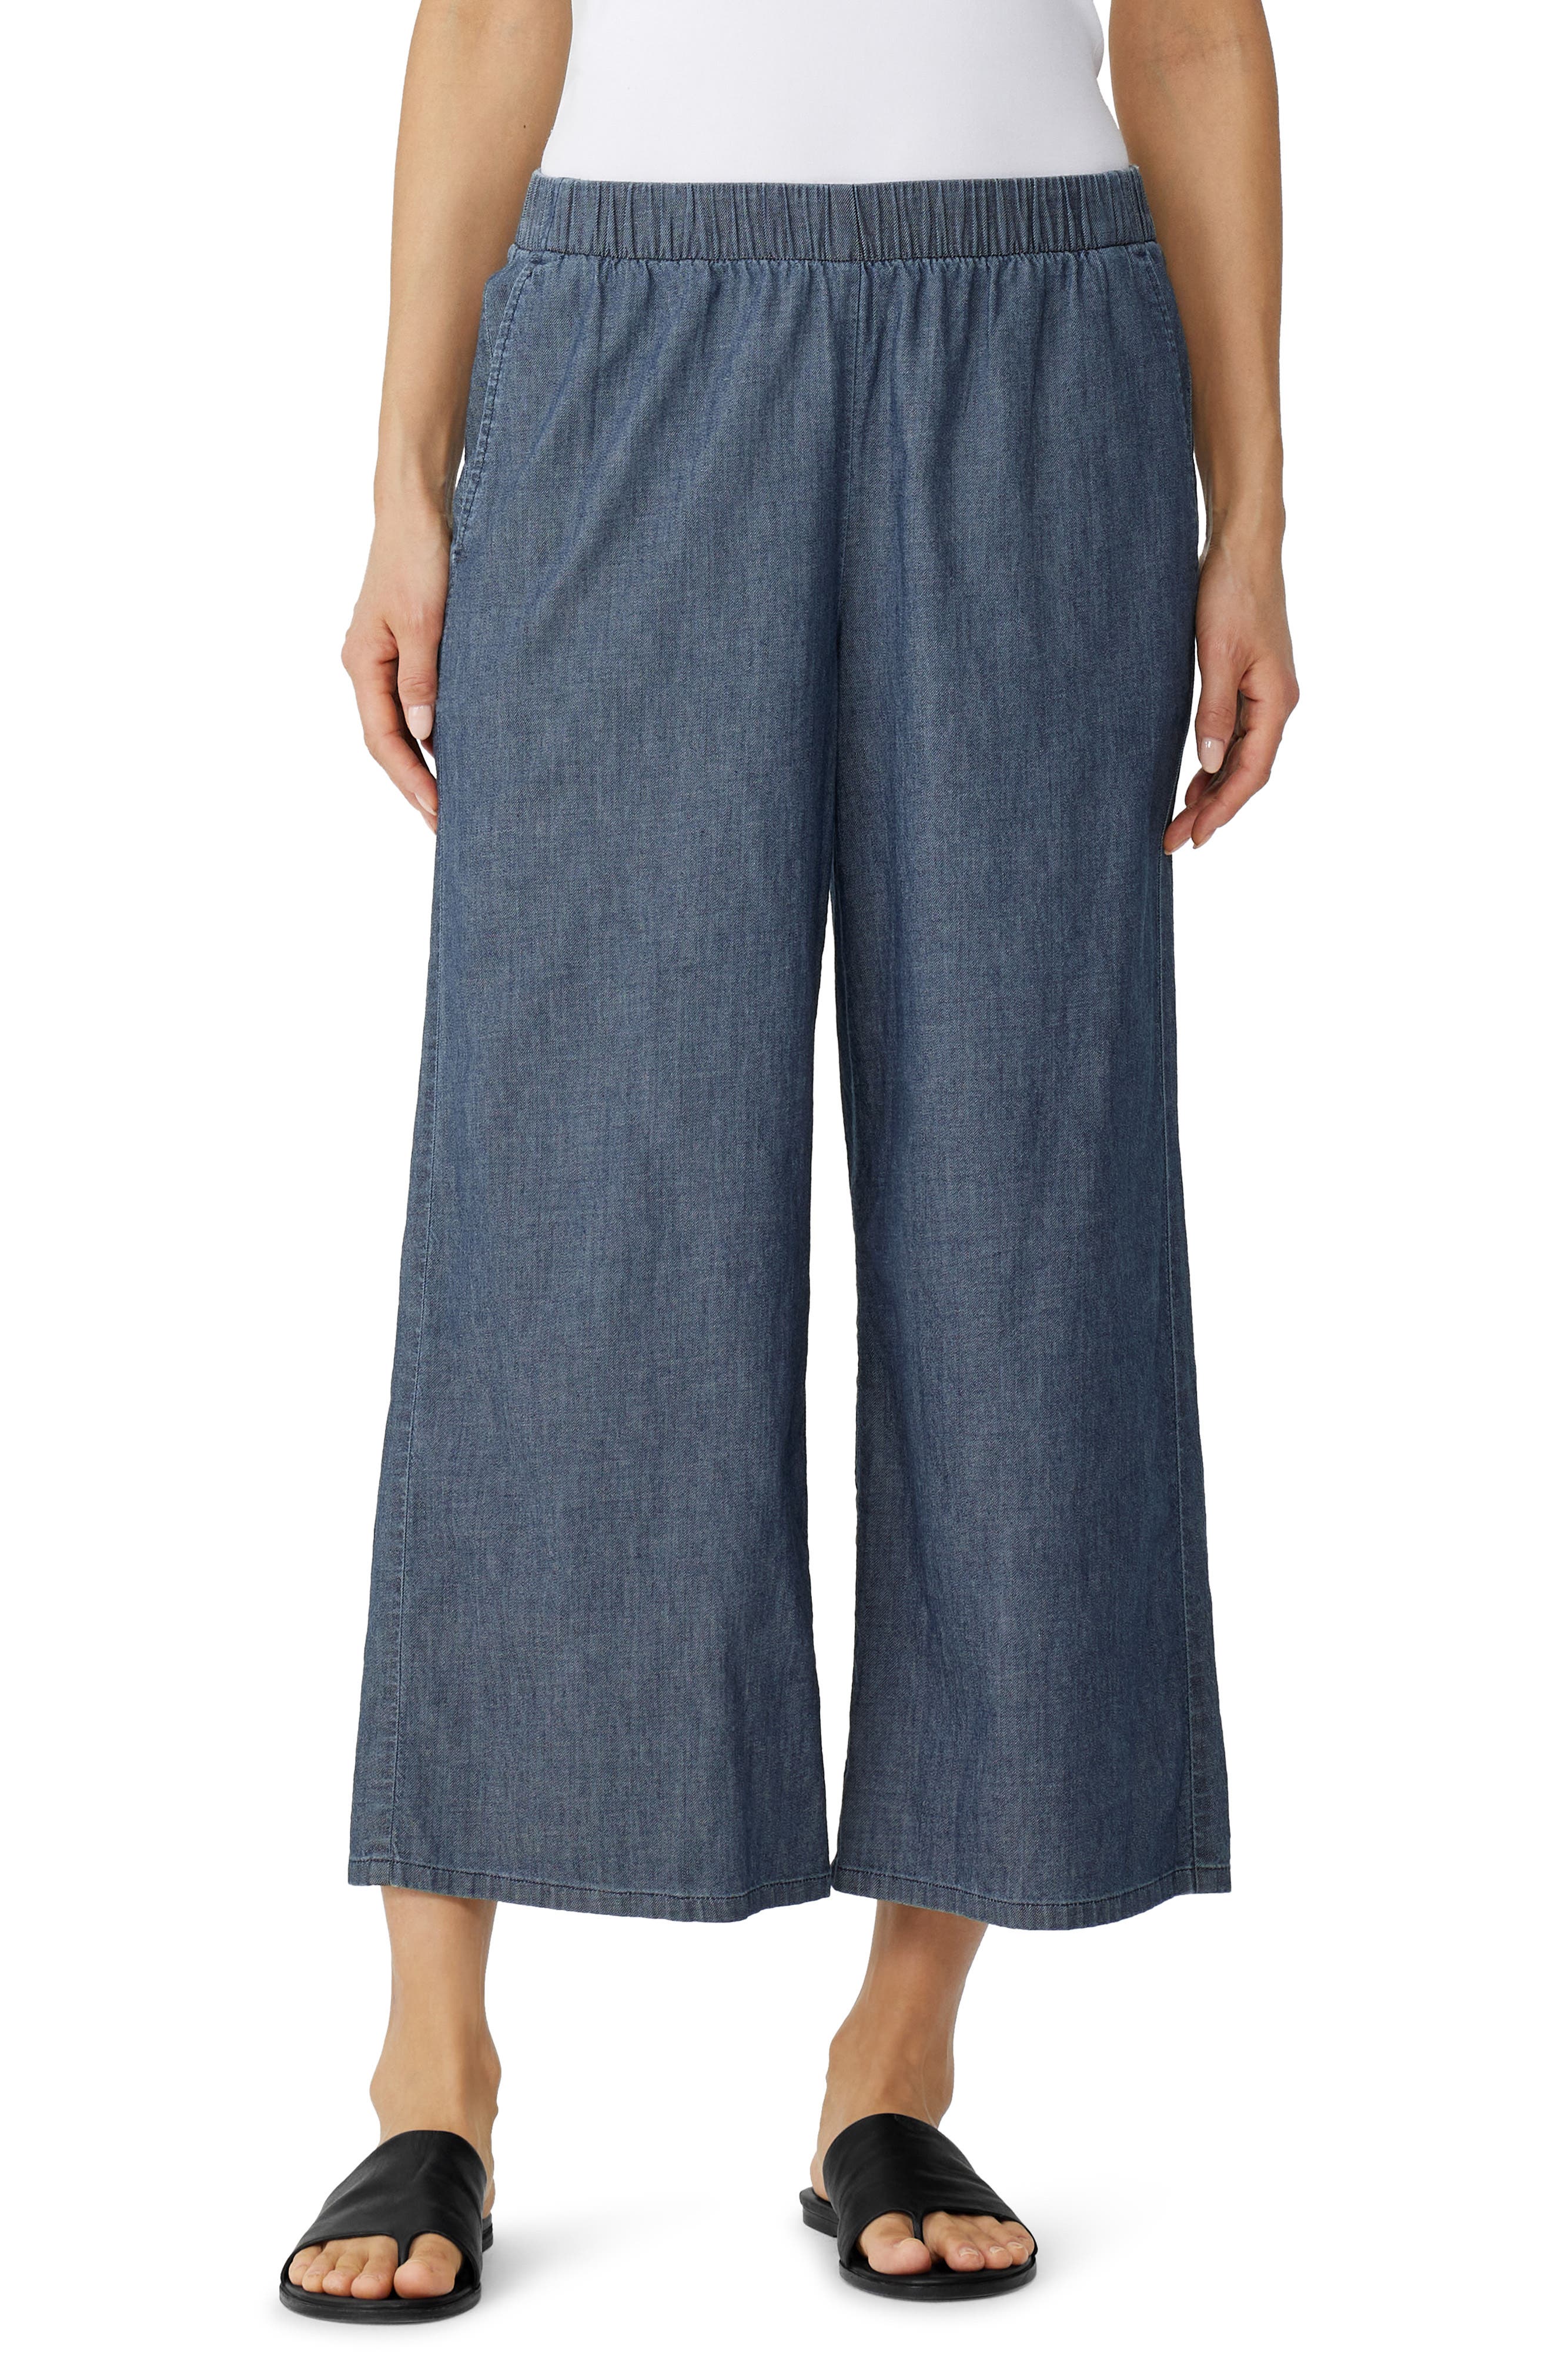 100% Cotton Ladies Crop Pants Women Cropped Capri Trousers Plus Size Shorts New 